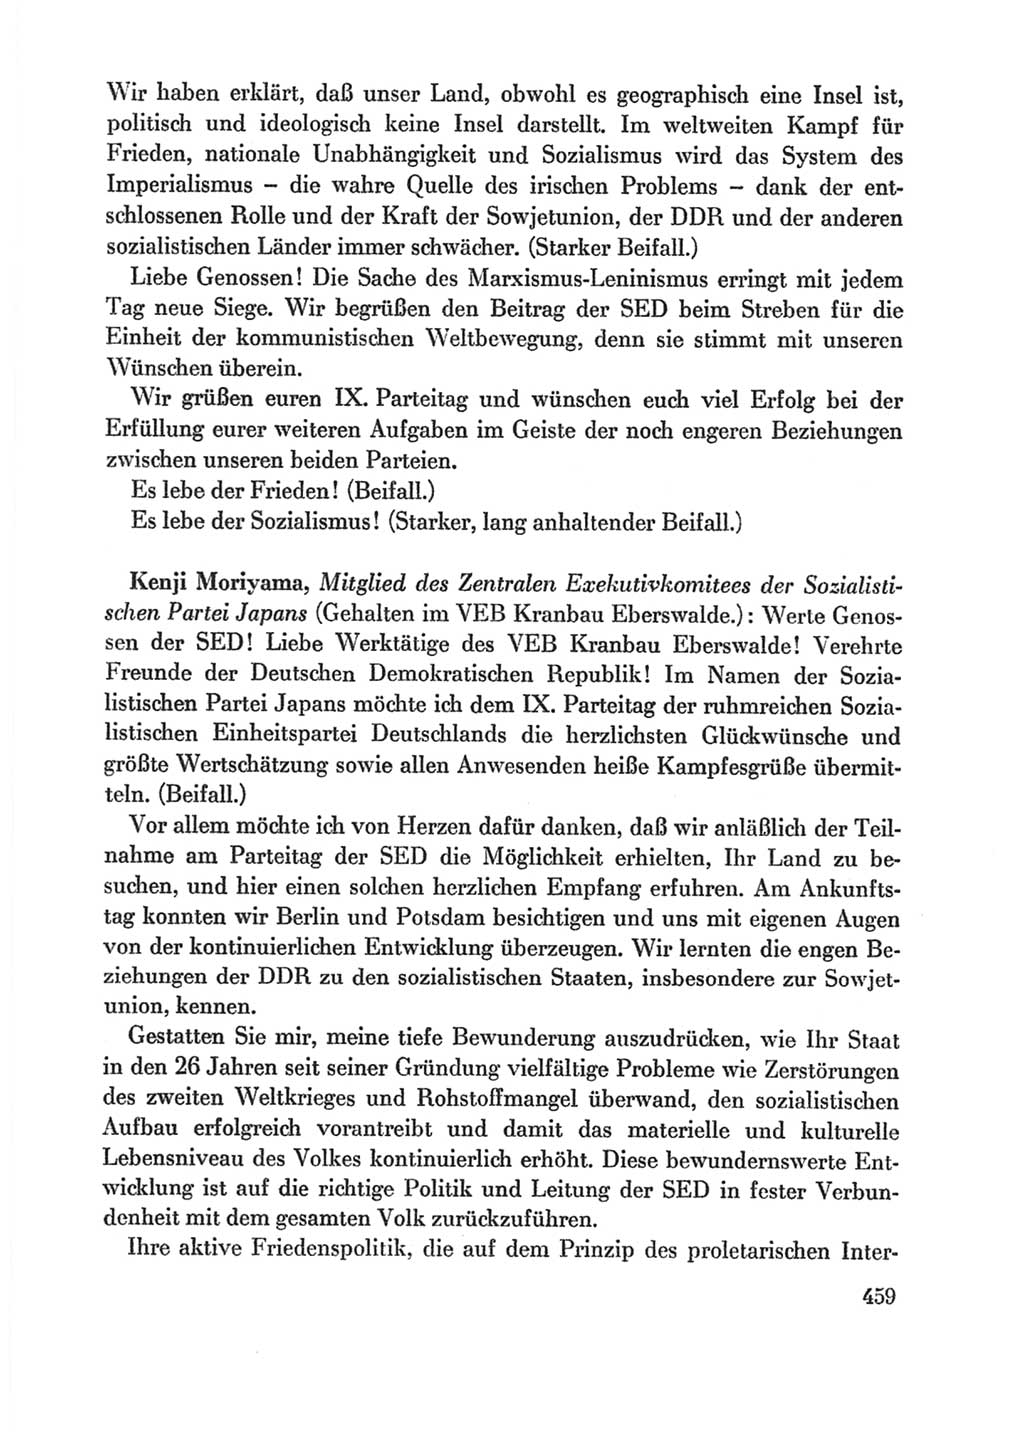 Protokoll der Verhandlungen des Ⅸ. Parteitages der Sozialistischen Einheitspartei Deutschlands (SED) [Deutsche Demokratische Republik (DDR)] 1976, Band 1, Seite 459 (Prot. Verh. Ⅸ. PT SED DDR 1976, Bd. 1, S. 459)